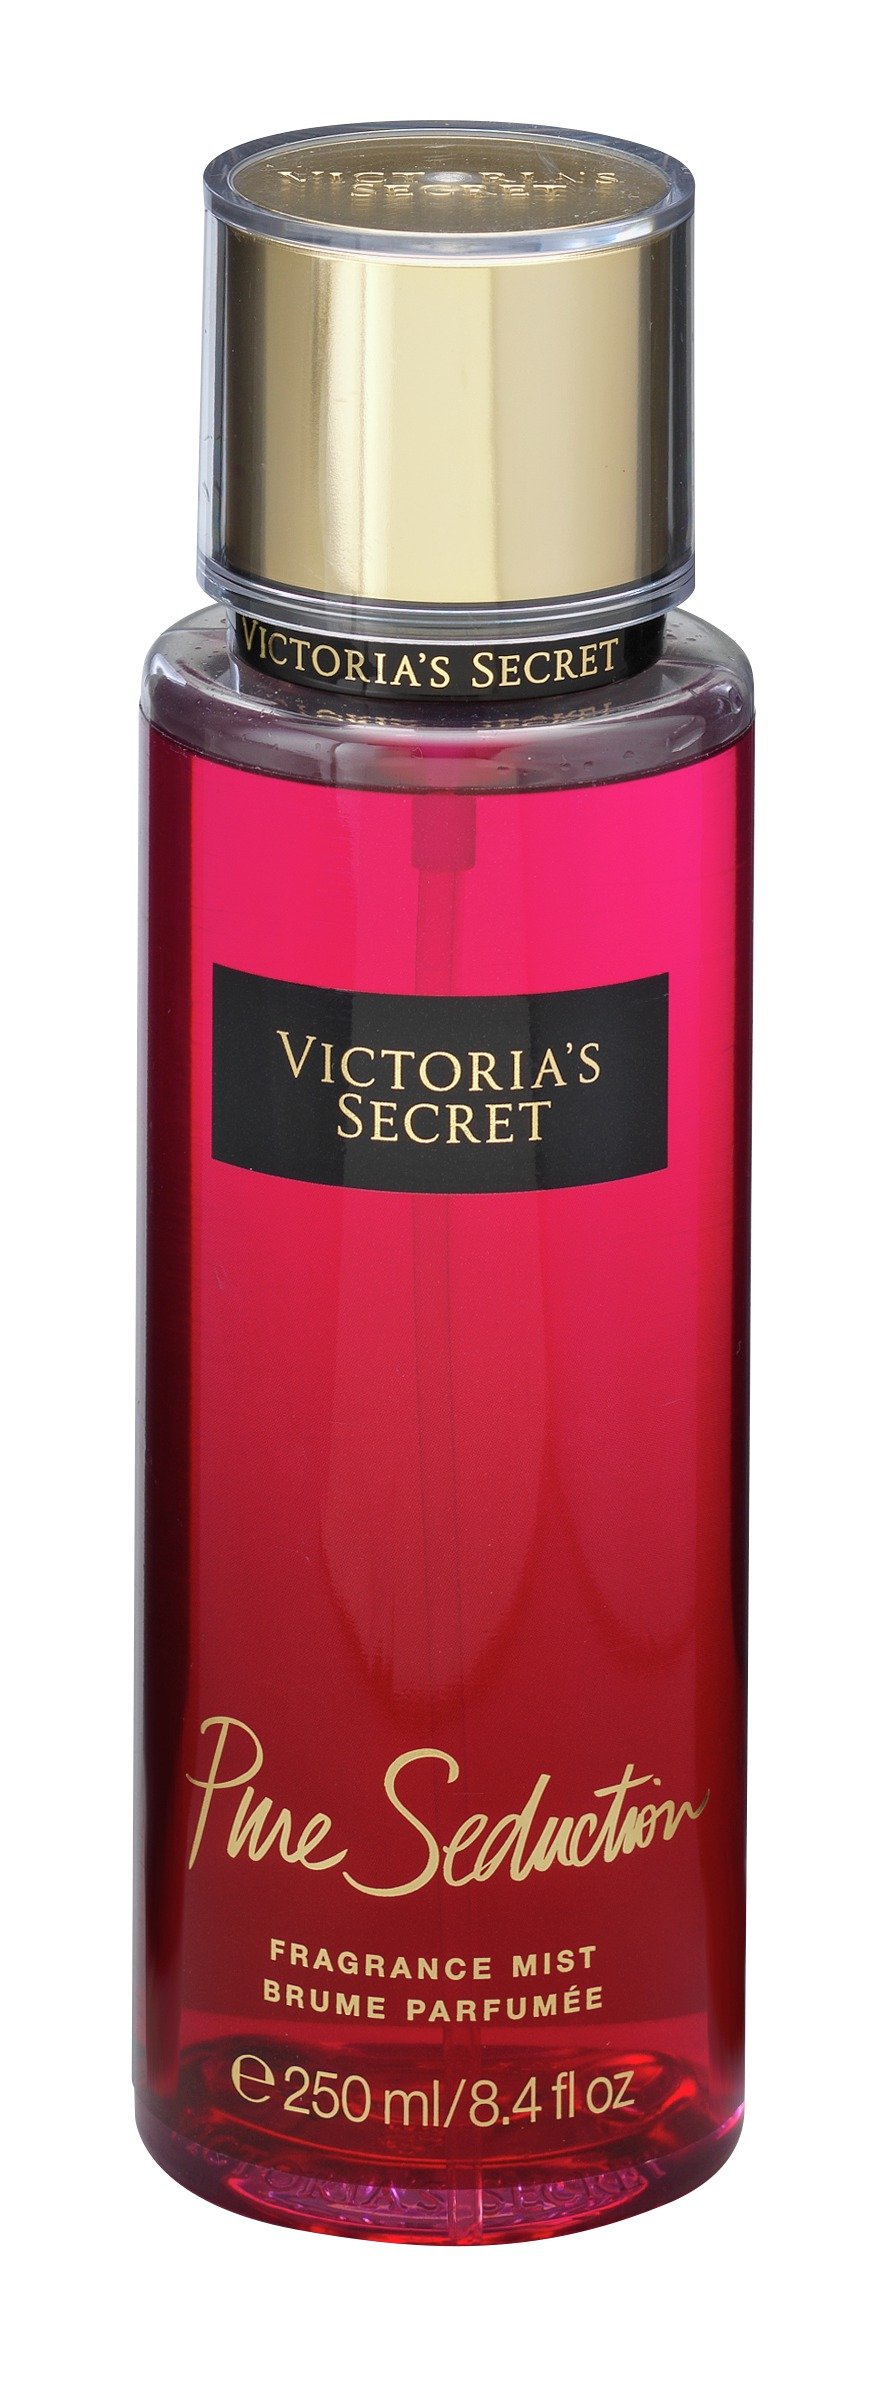 Victorias Secret Pure Seduction Body Mist Reviews